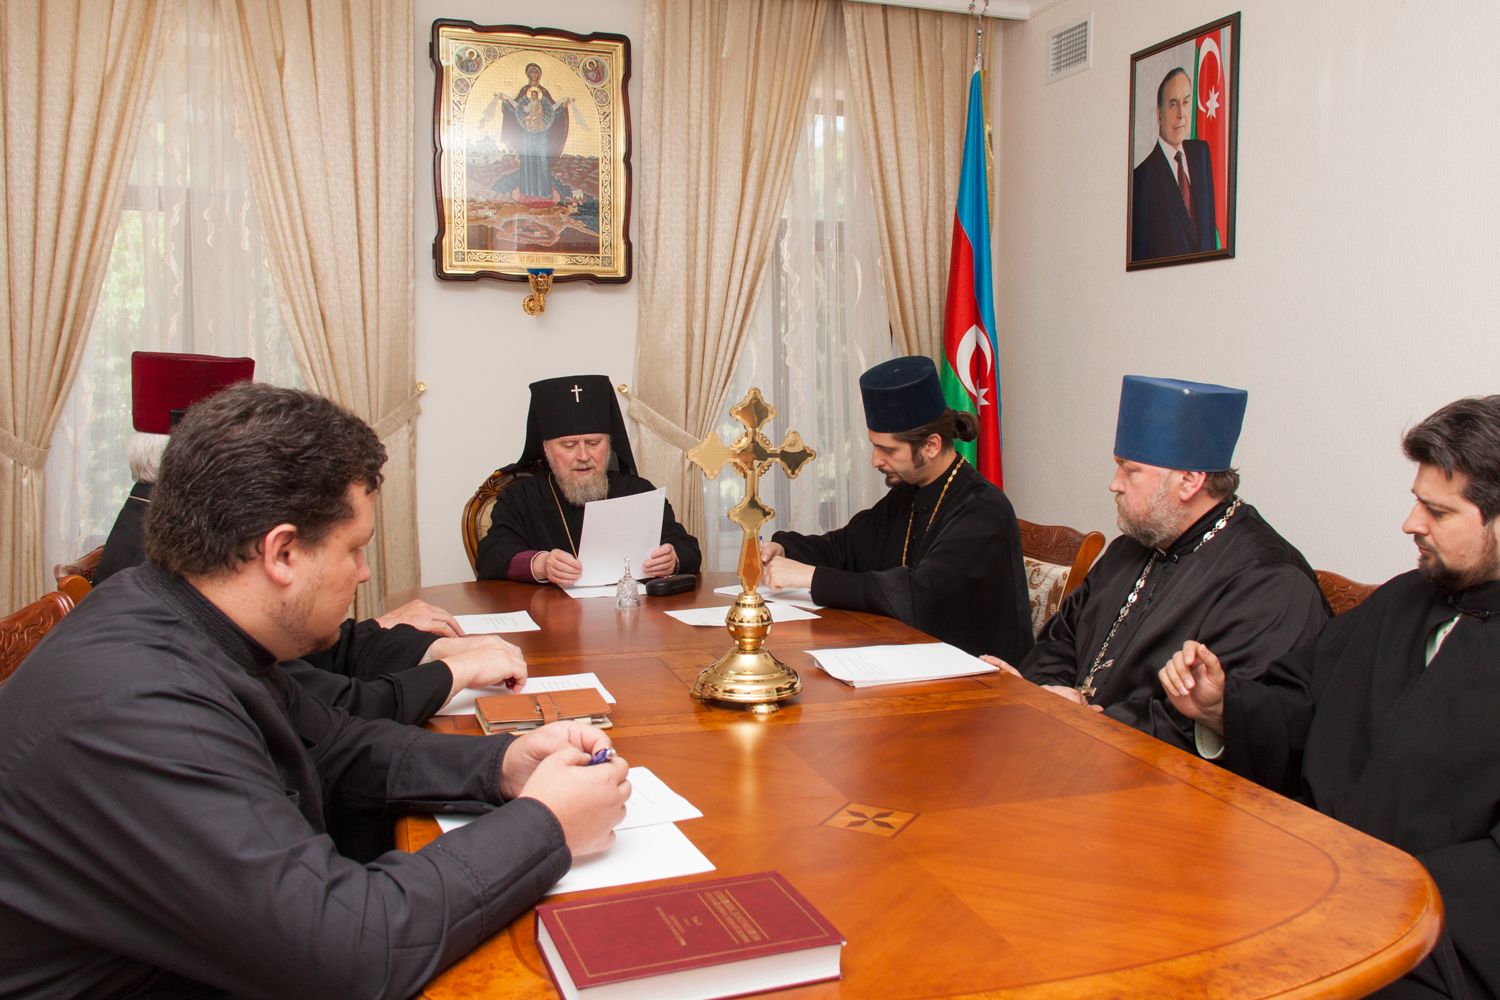 Высокопреосвященный архиепископ Александр провел заседание Епархиального совета Бакинской епархии.